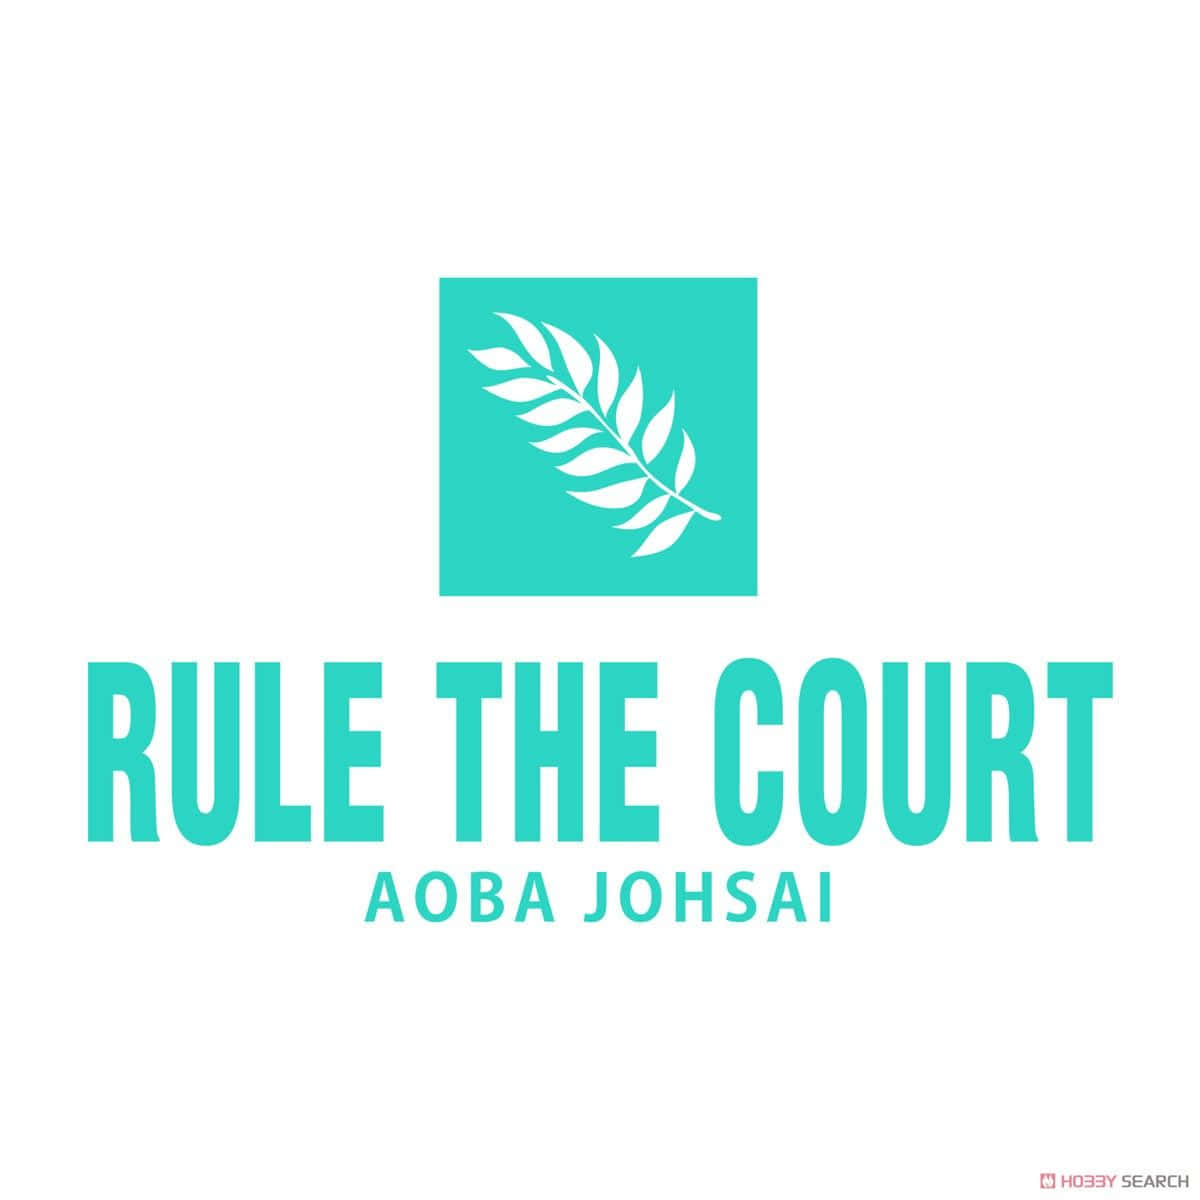 Herrscheüber Den Court - Das Aoba Johsai-logo Wallpaper